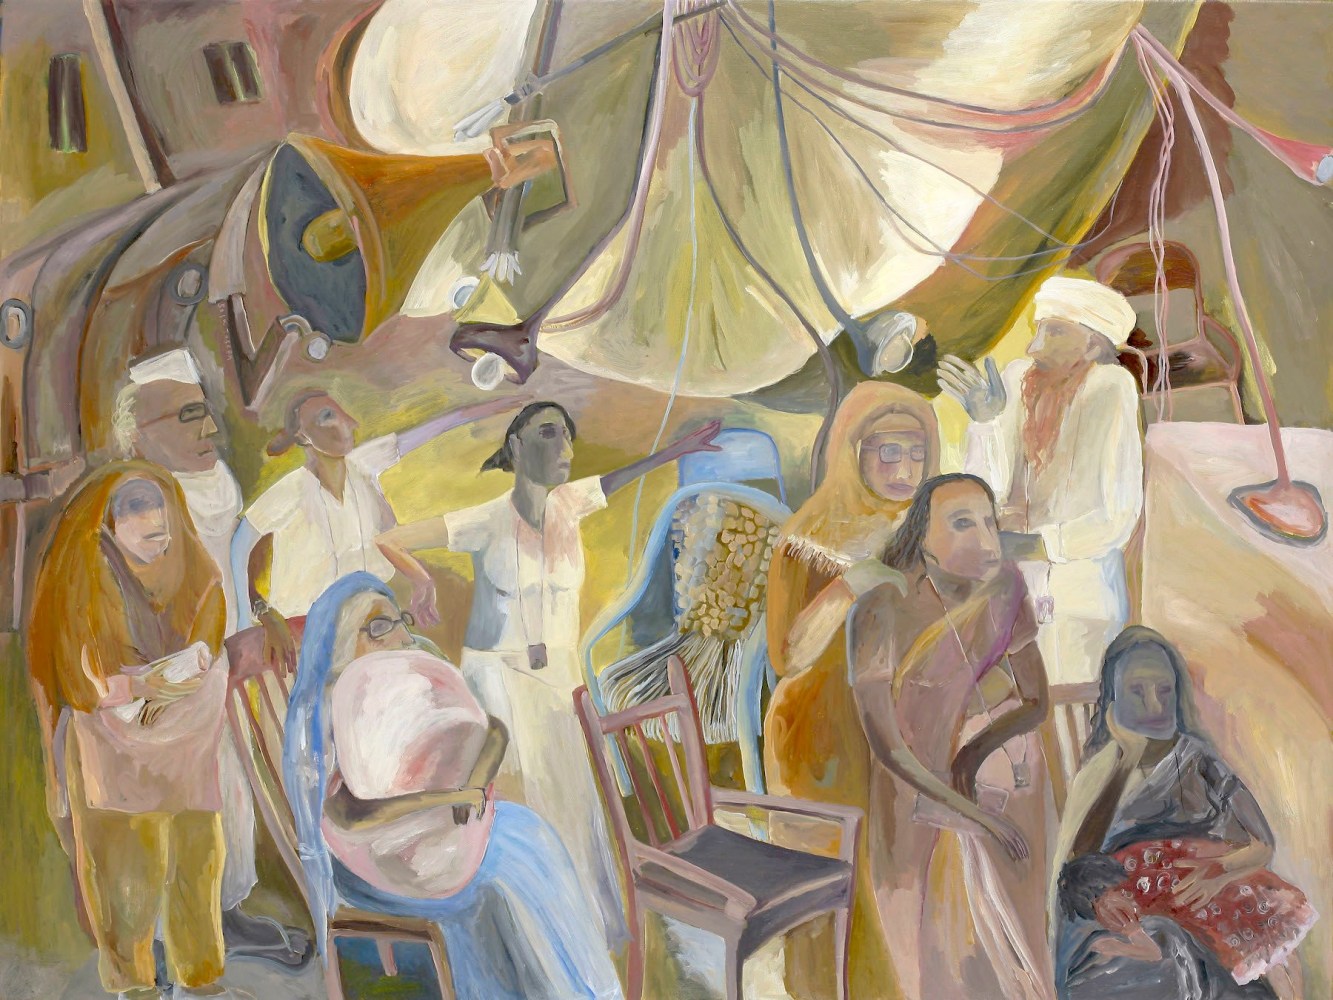 SOSA JOSEPH  Waits, 2013  Oil on canvas  36 x 48 in / 92 x 122 cm